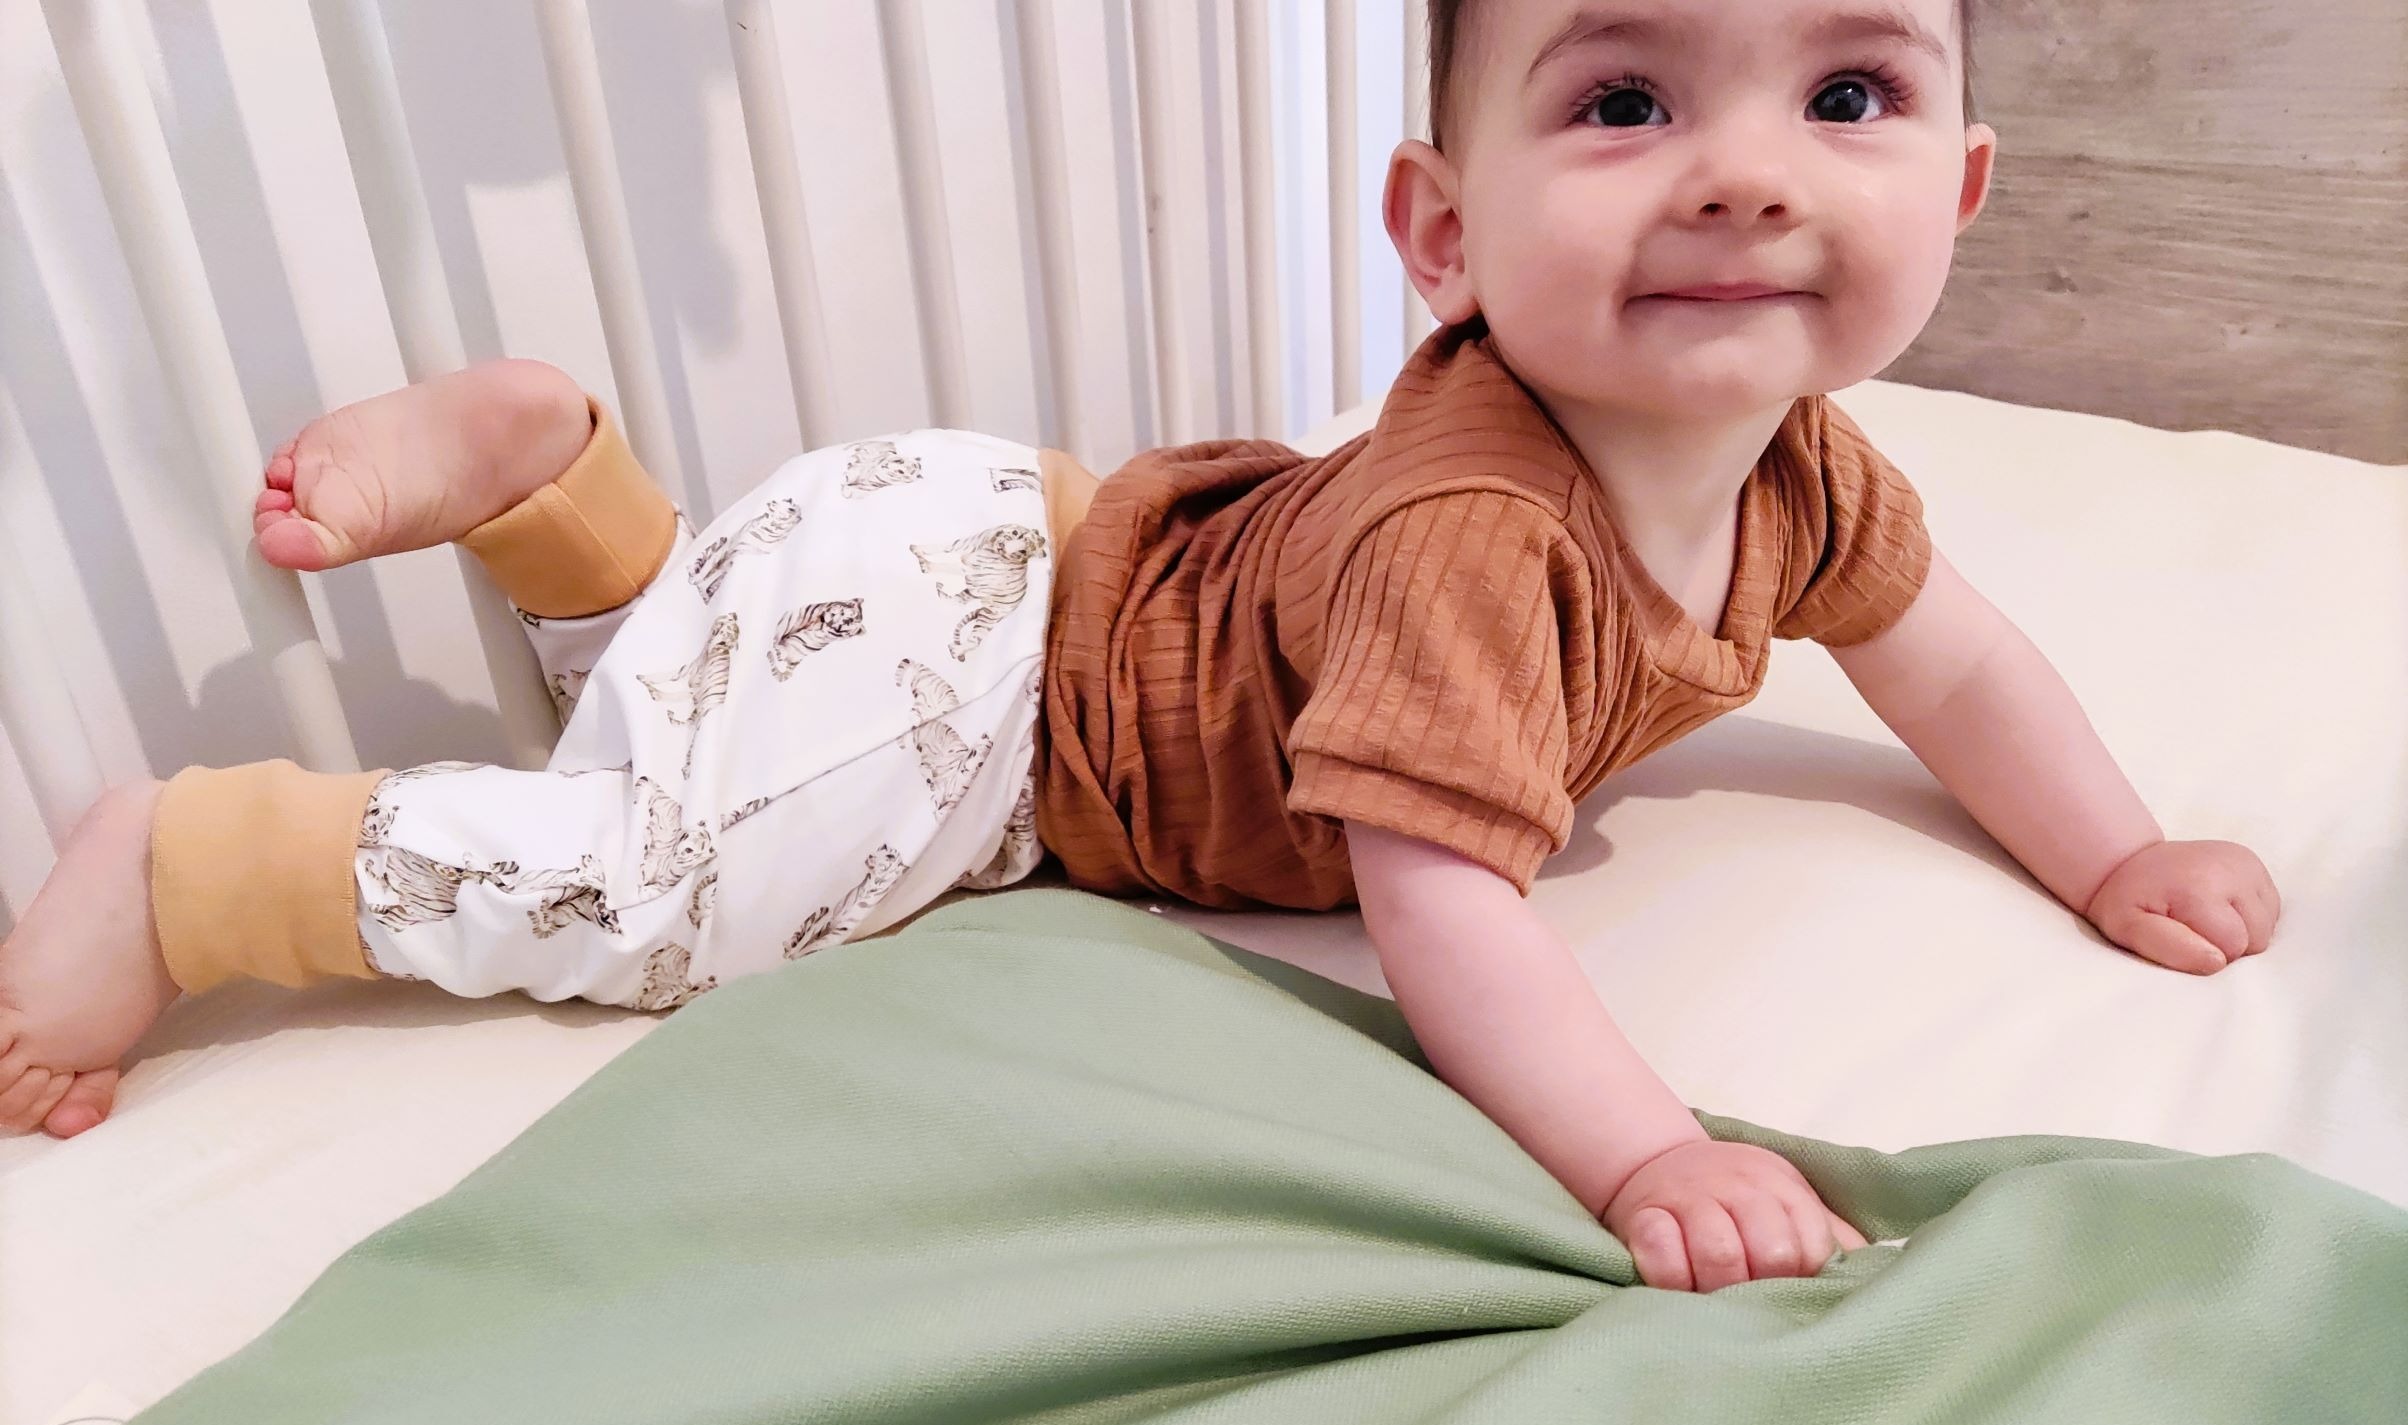 les habits vetements et accessoires made in france pour bebe